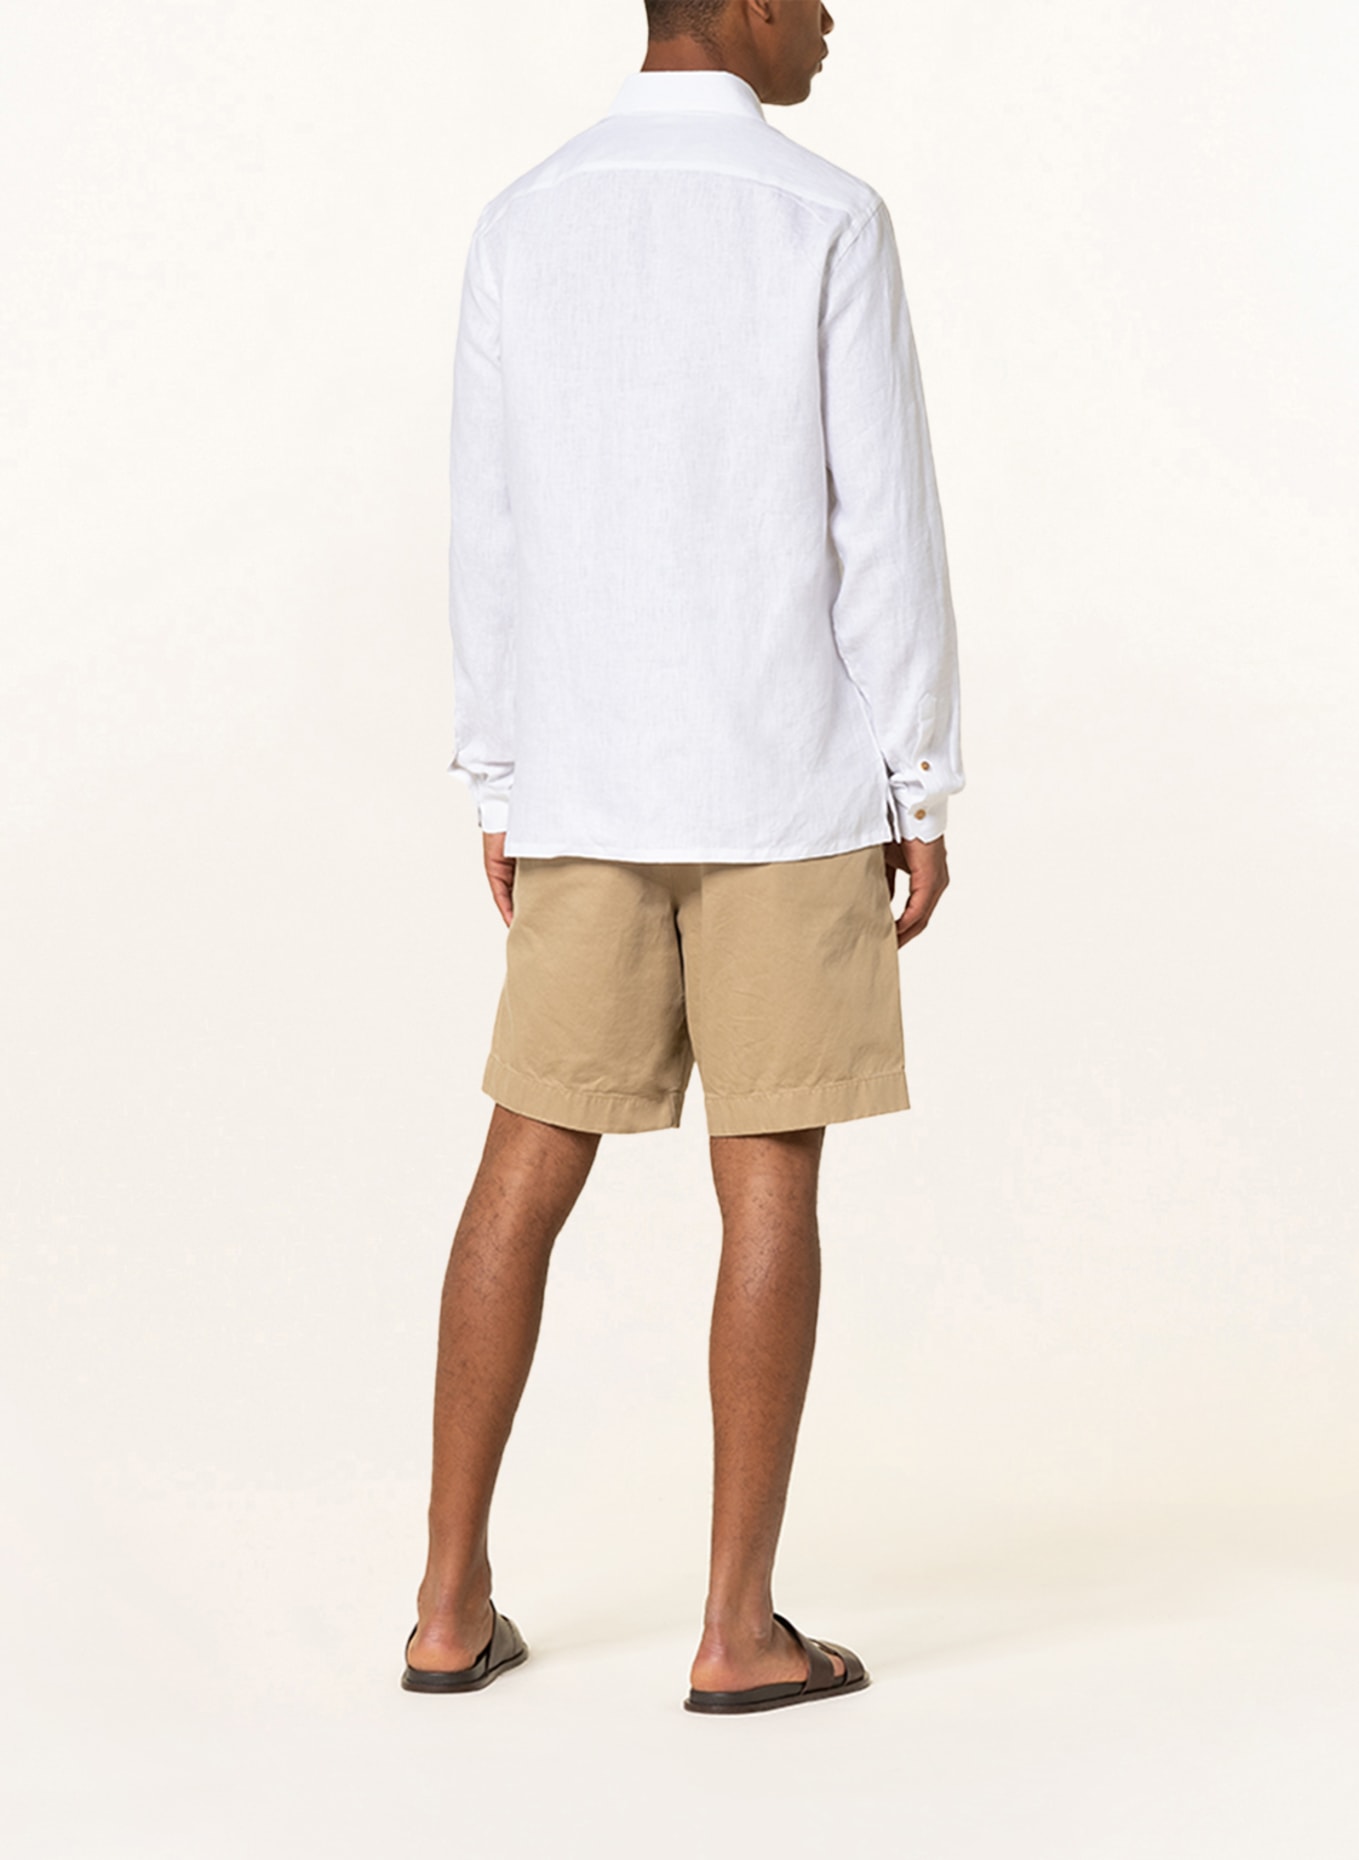 RIPA RIPA Linen shirt regular fit, Color: WHITE (Image 3)